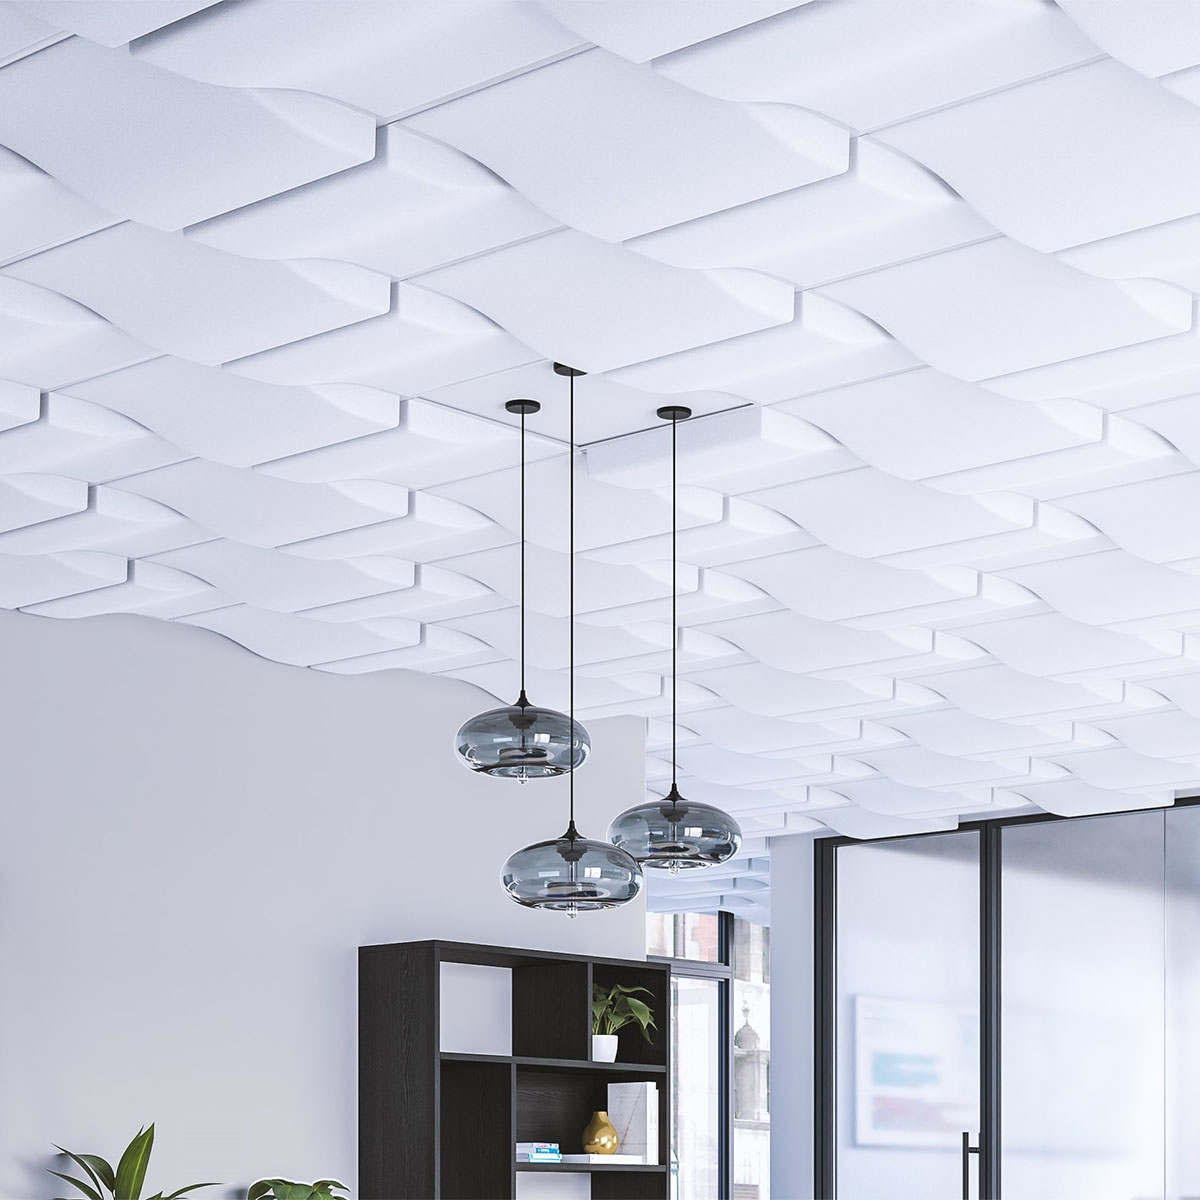 Alphasorb Designer Drop Ceiling Tiles Acoustical Solutions